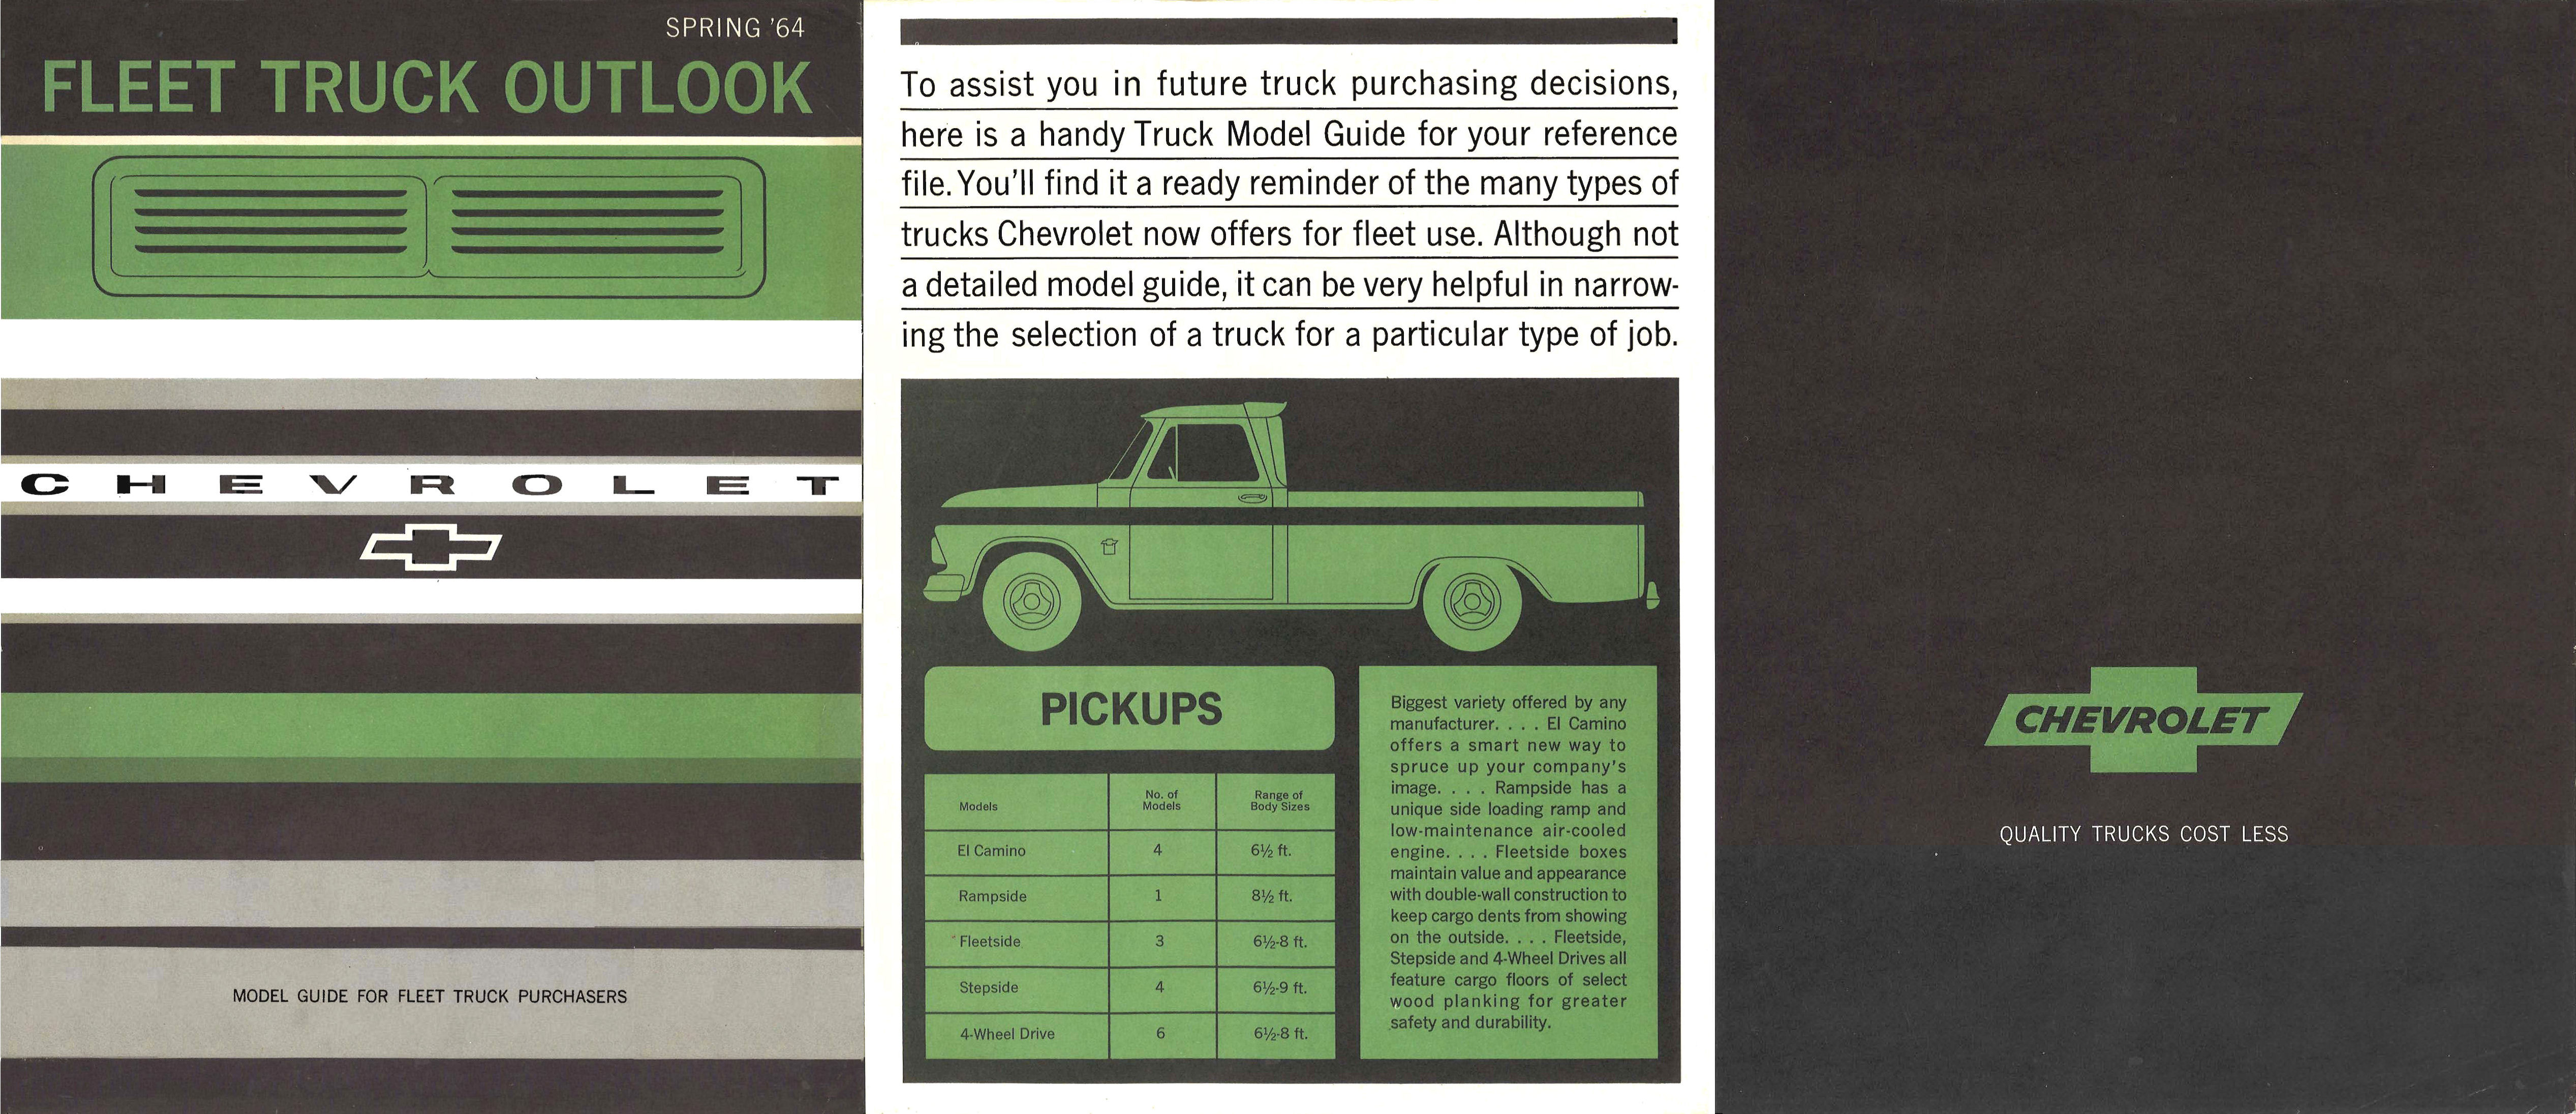 1964_Chevrolet_Fleet_Truck_Model_Guide-01-02-03